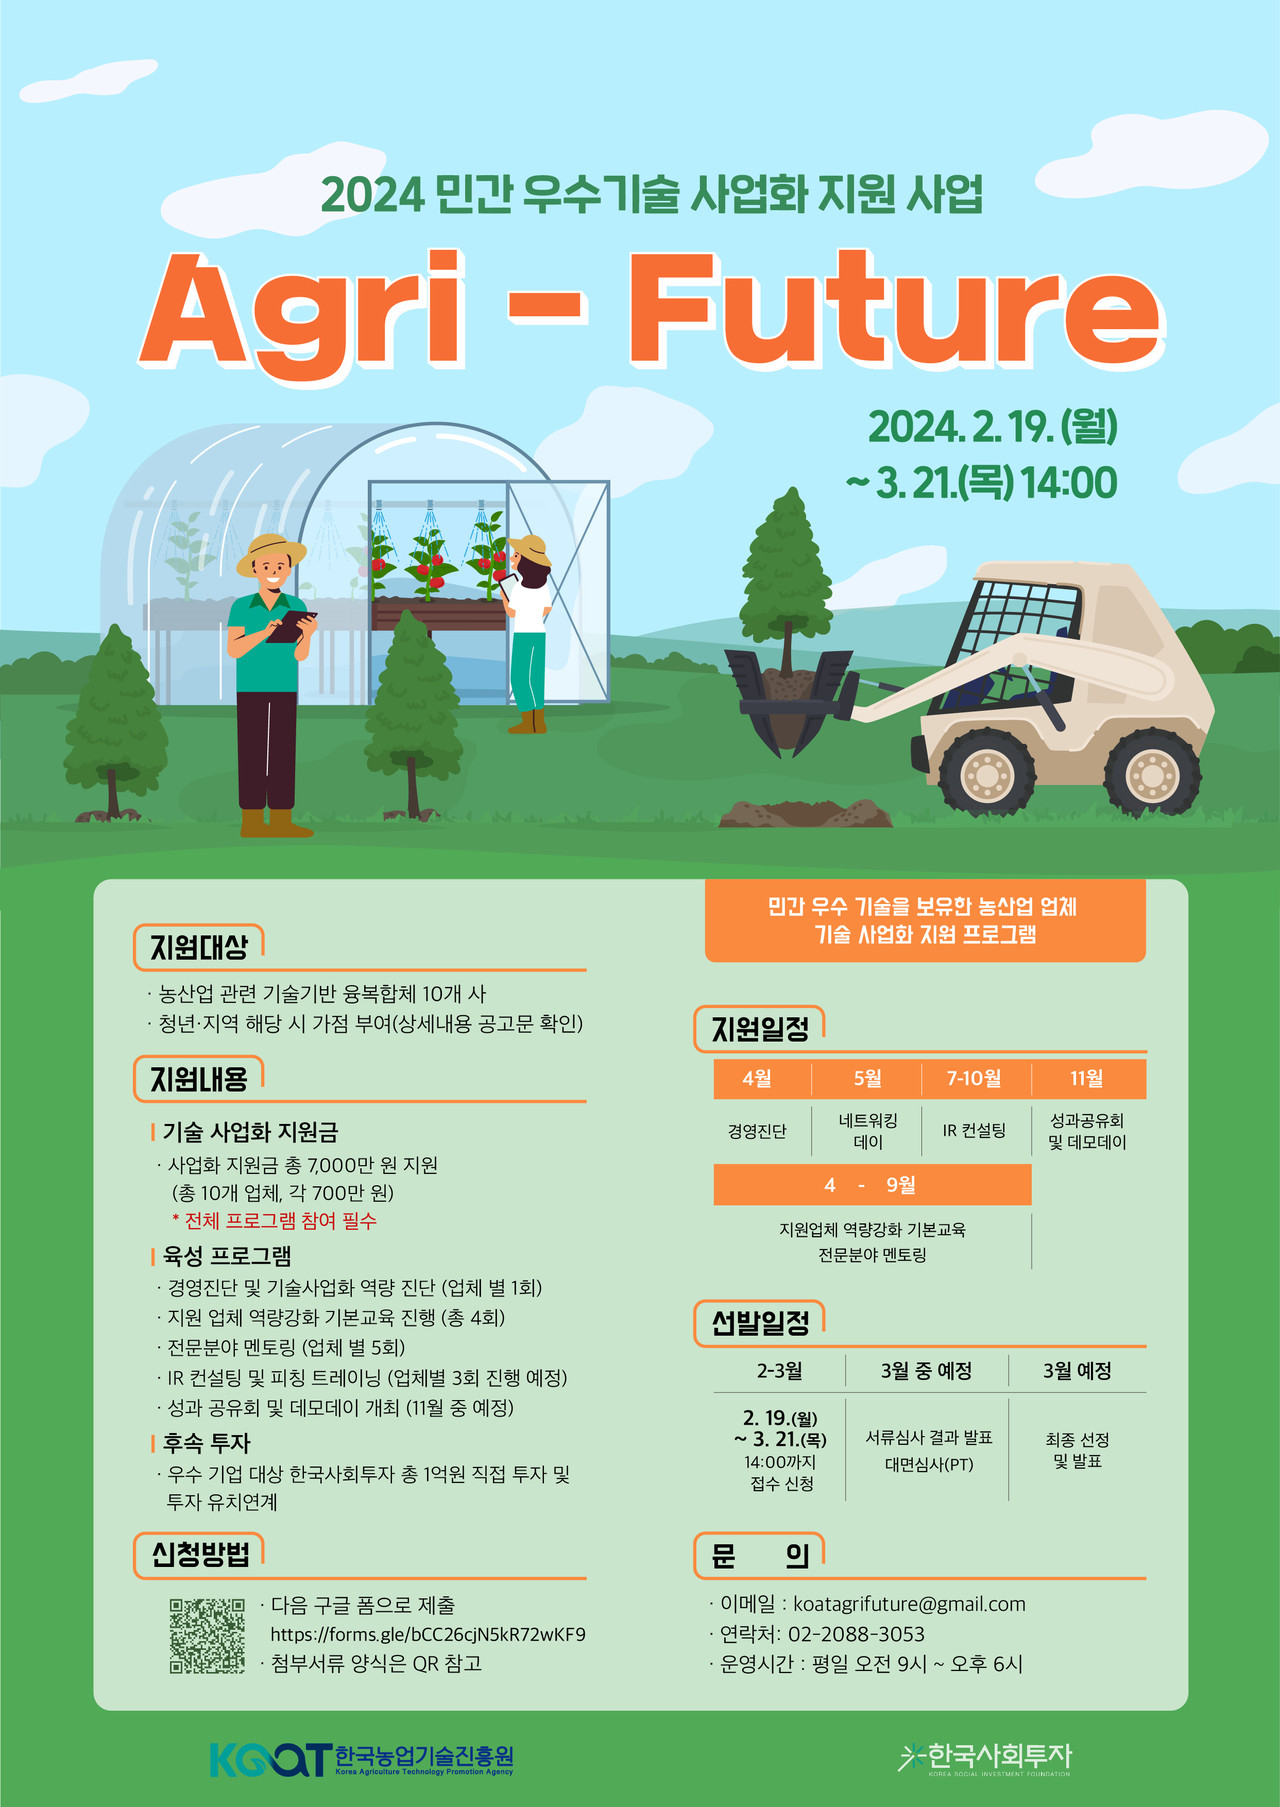 ▲사진 : 2024 민간 우수기술 사업화 지원 사업  Agri-Future(애그리퓨처) 포스터. 출처: 한국사회투자